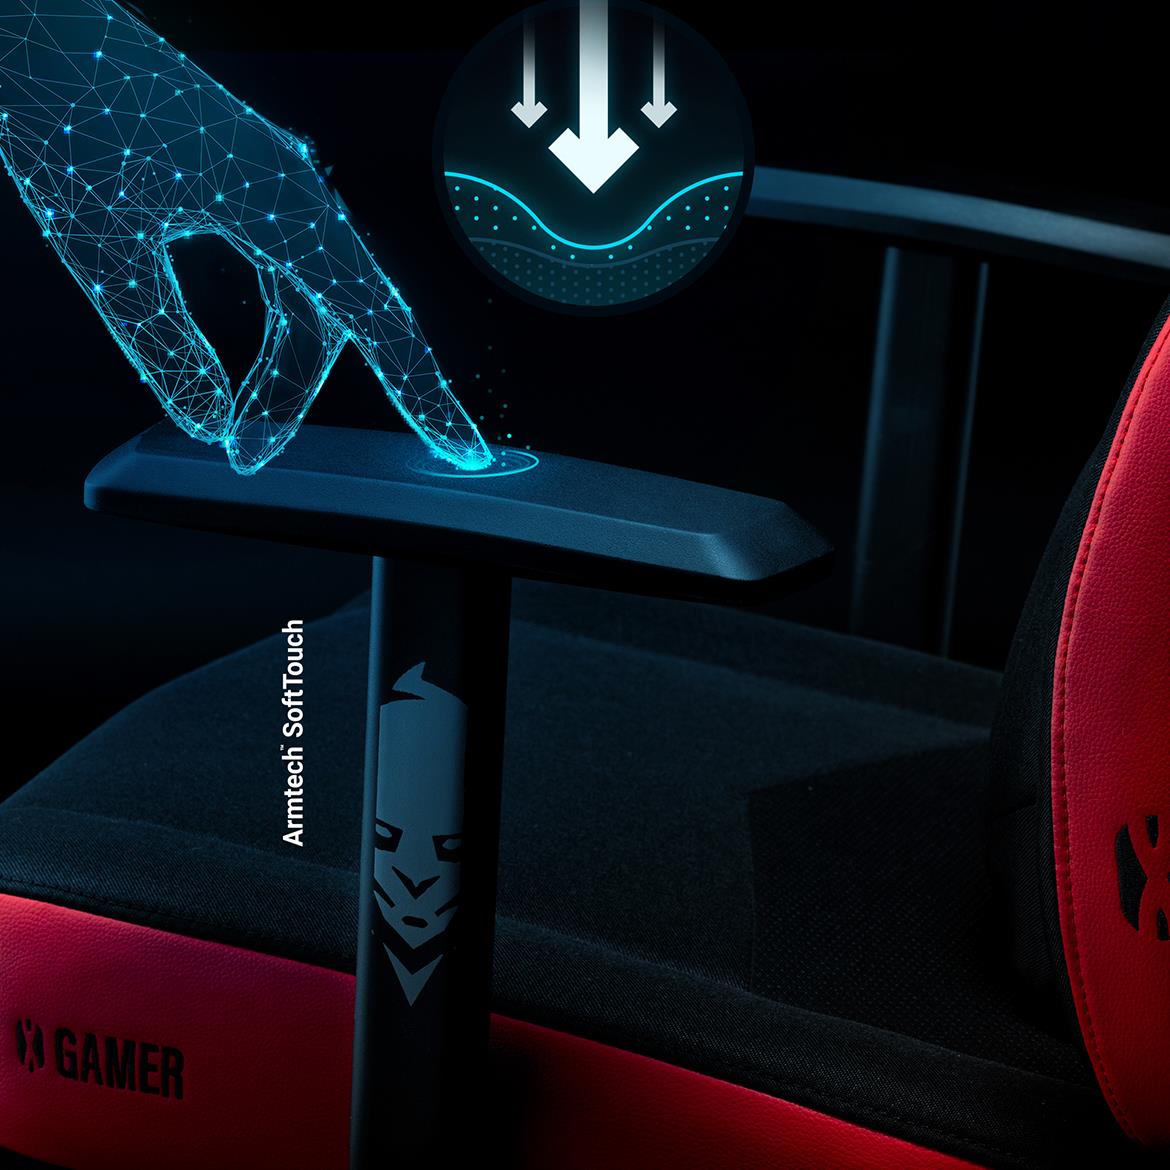 Diablo X-Gamer 2.0 kancelarijska stolica 68,5x56x118 cm crno crvena